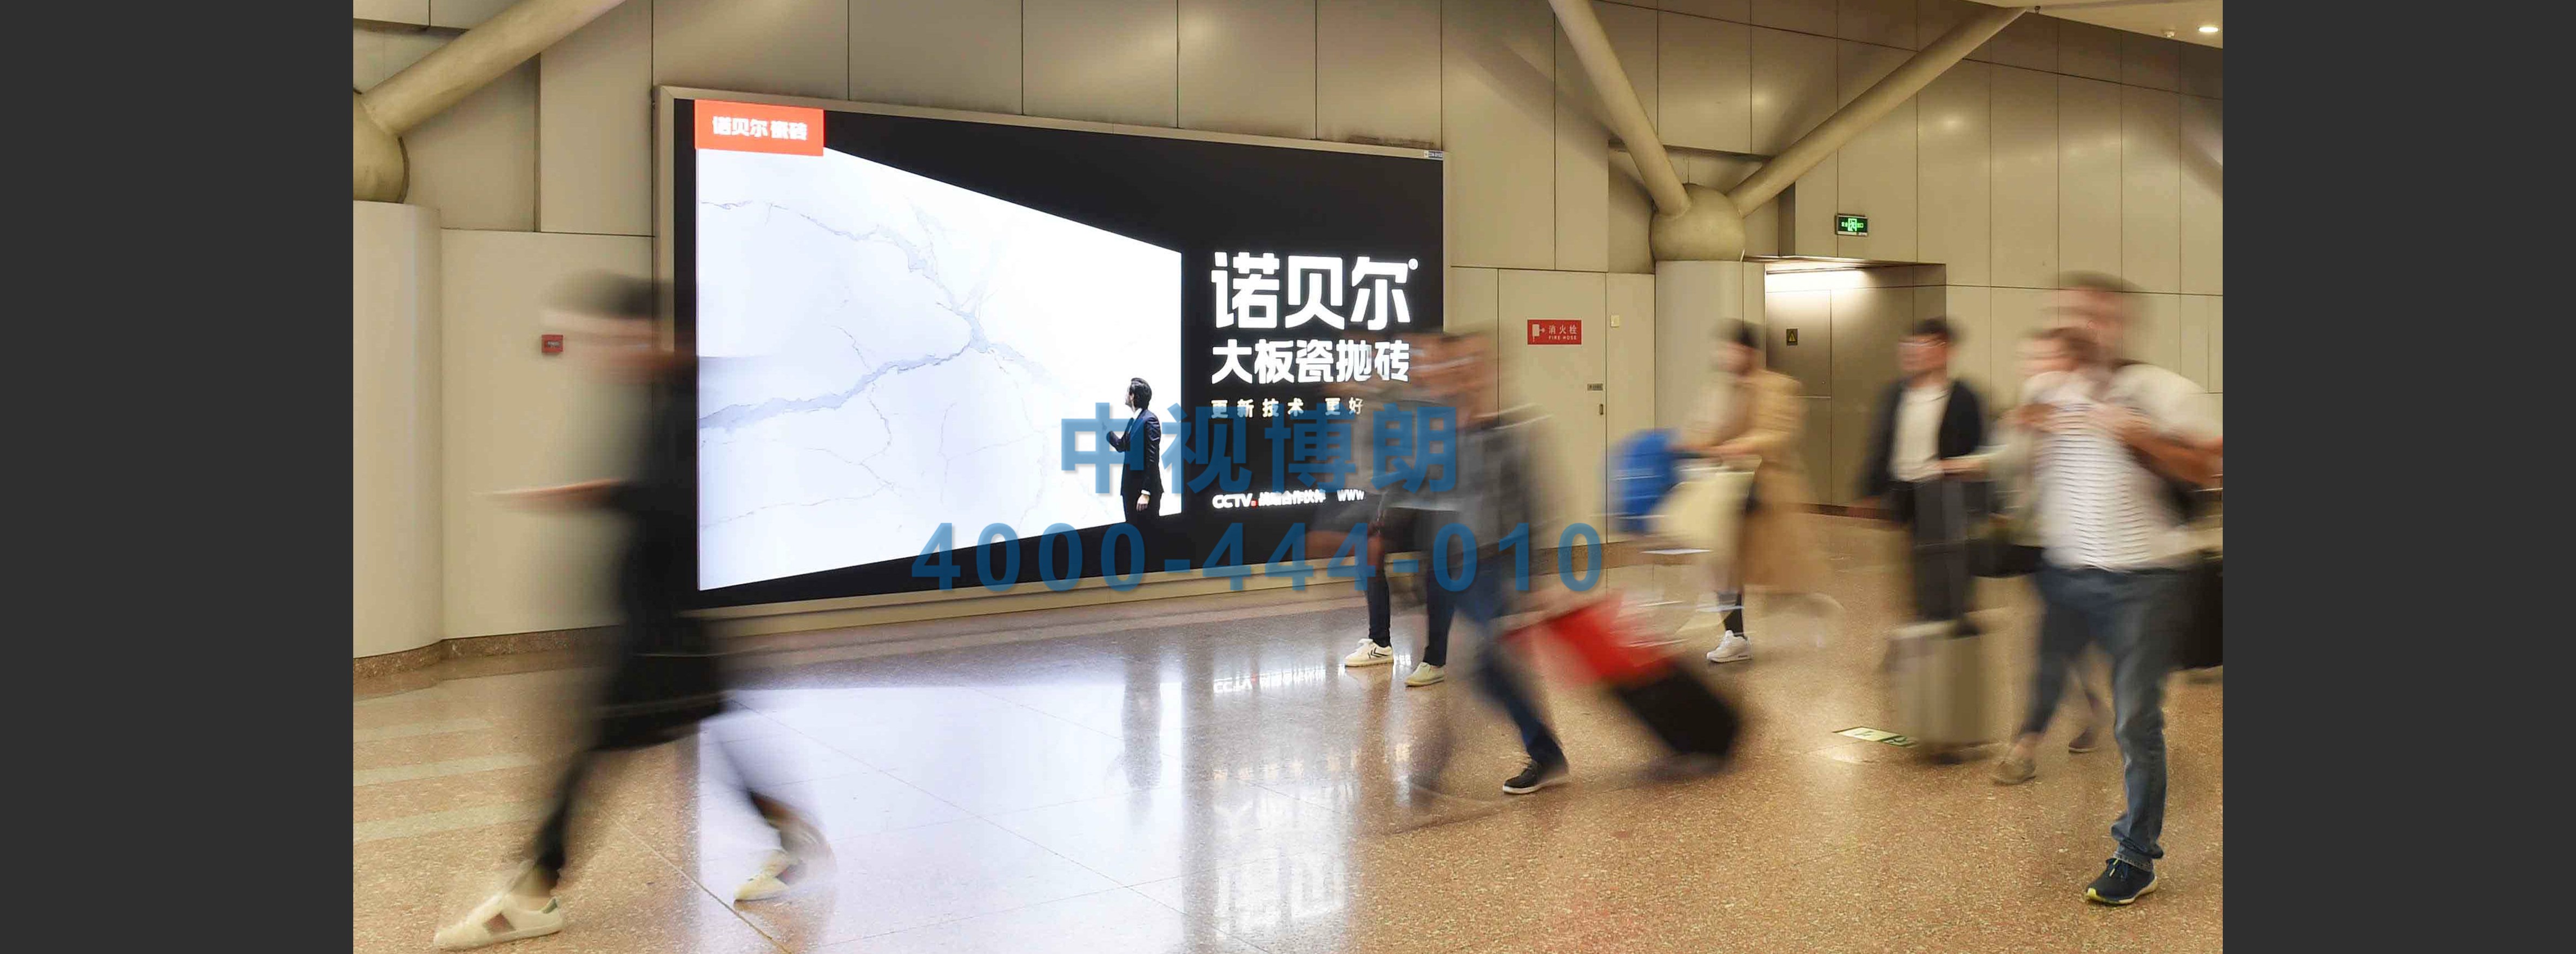 北京首都机场广告-T2到达走廊灯箱D162